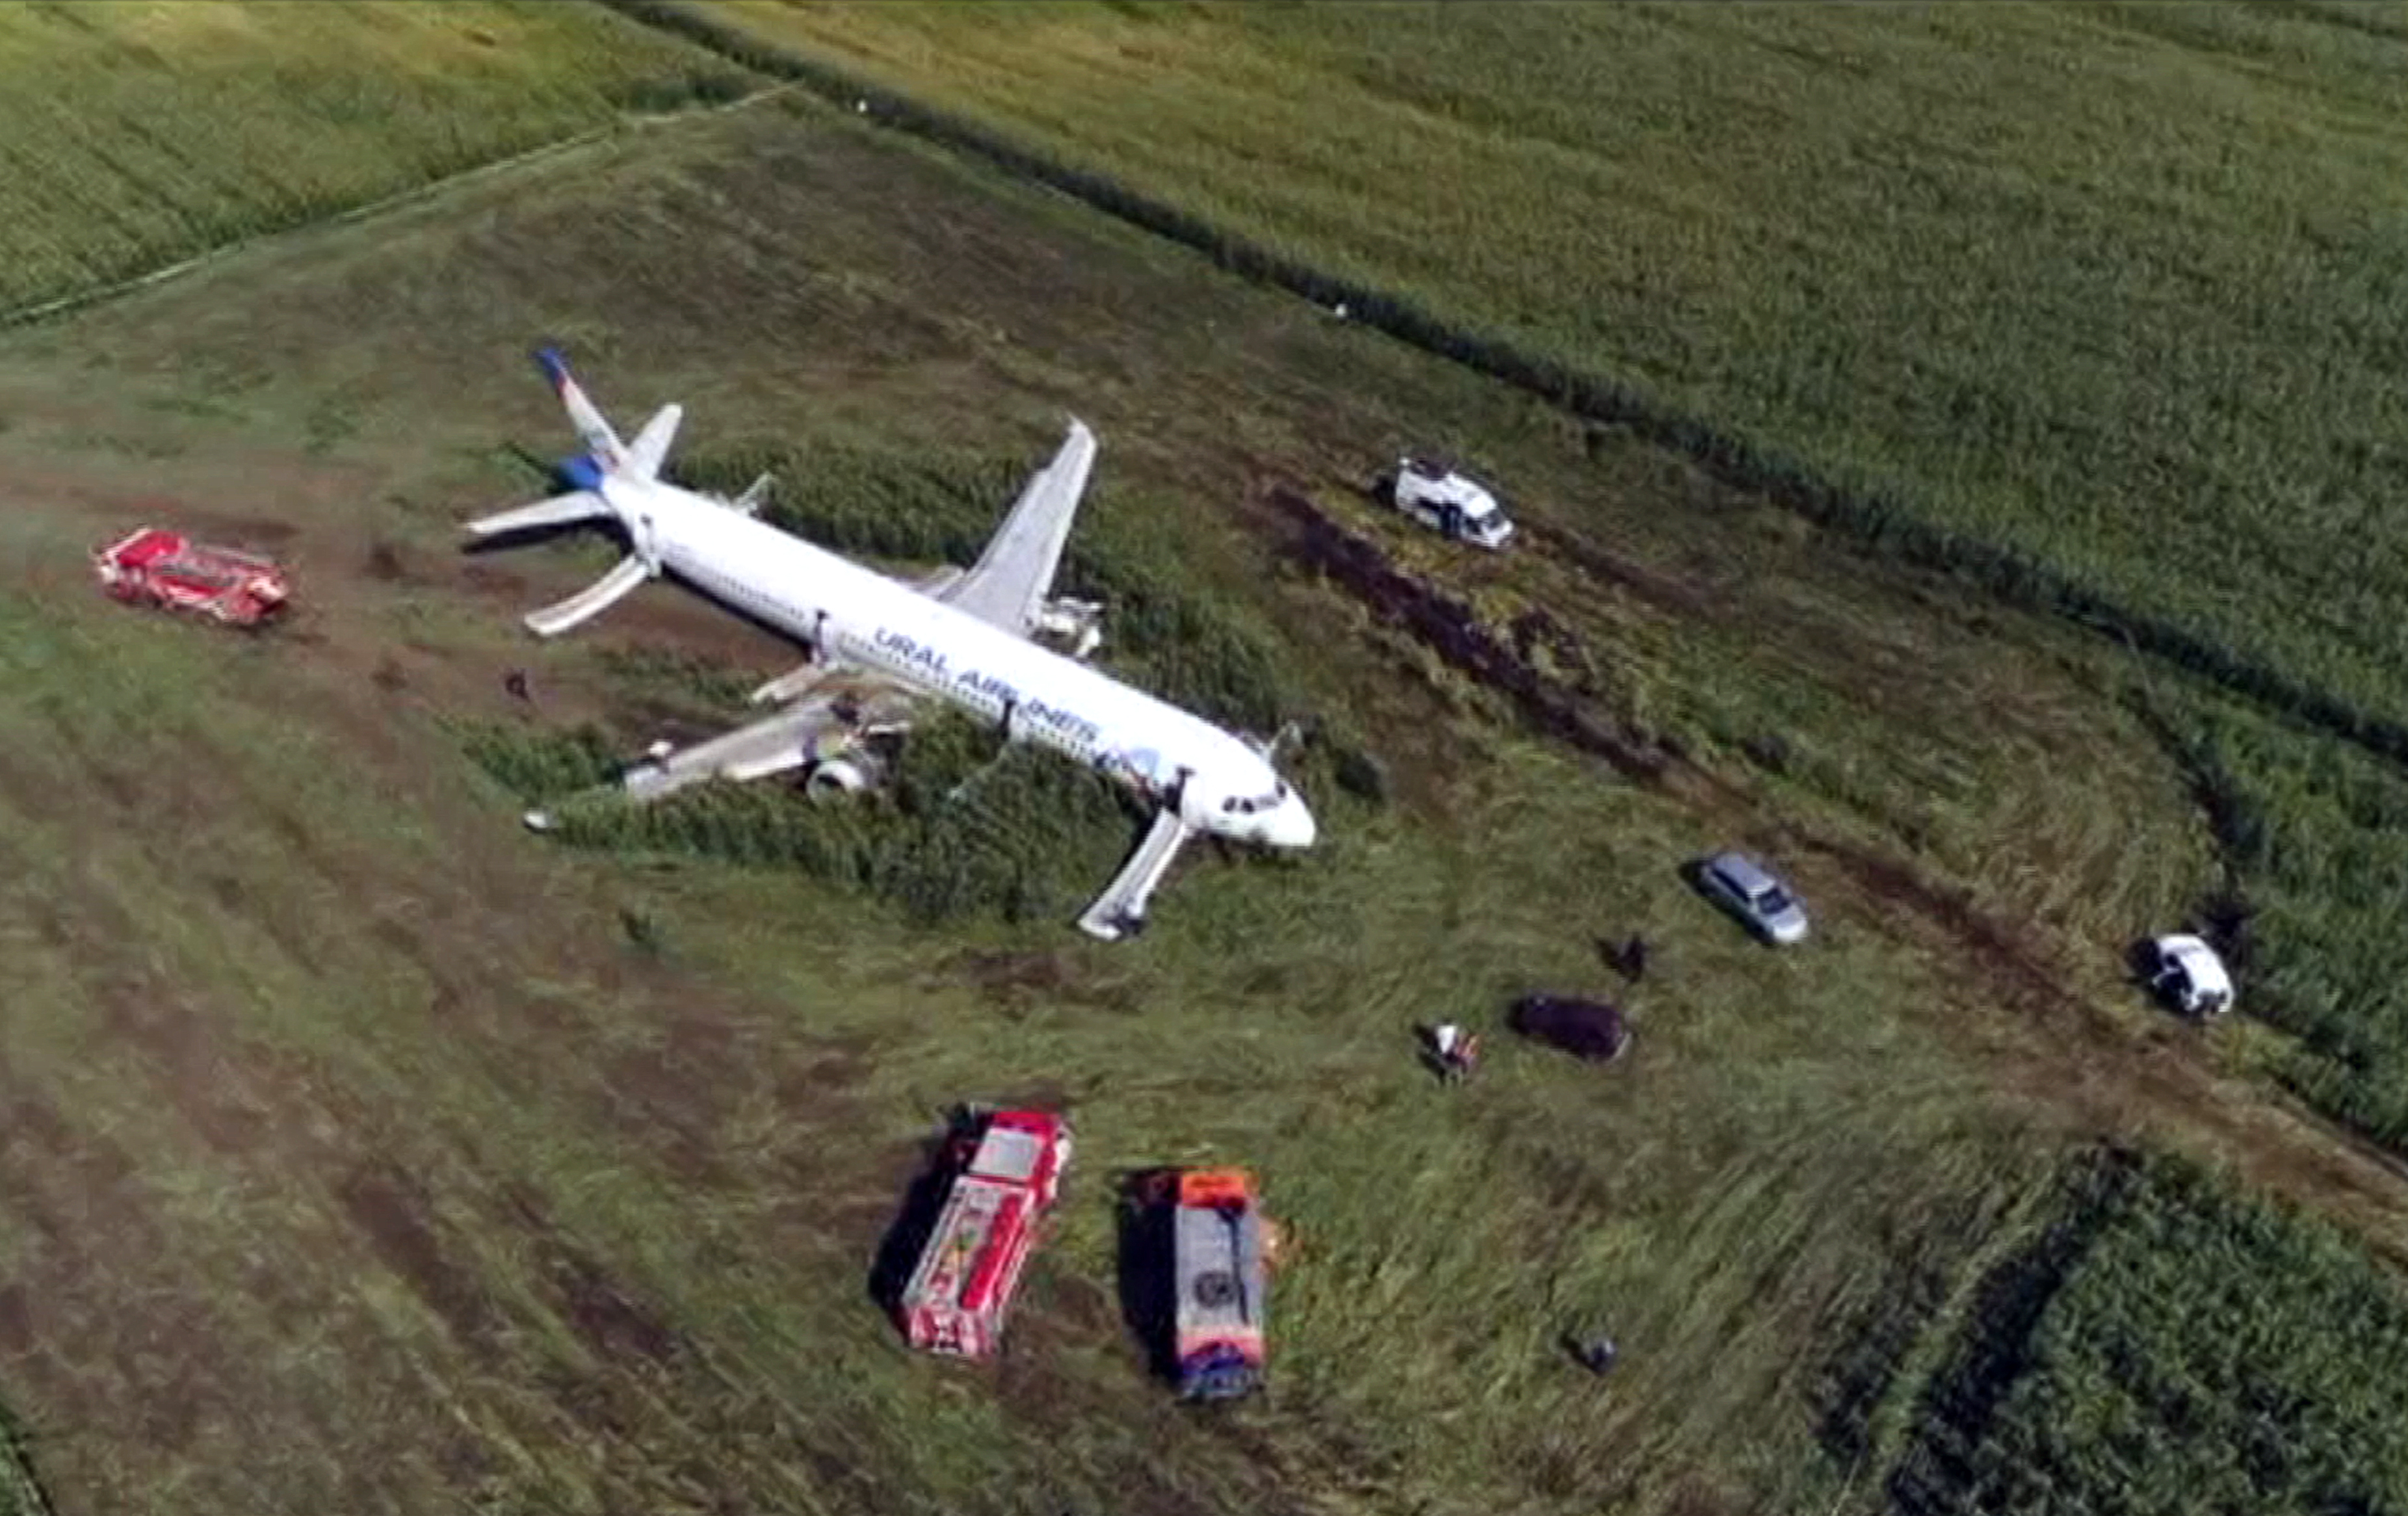 Lietadlo  Airbus A321 spoločnosti Ural Airlines tvrdo pristálo v poli neďaleko letiska Žukovskij v Moskovskej oblasti 15. augusta 2019. V čase tvrdého pristátia lietadlu nefungoval ani jeden motor